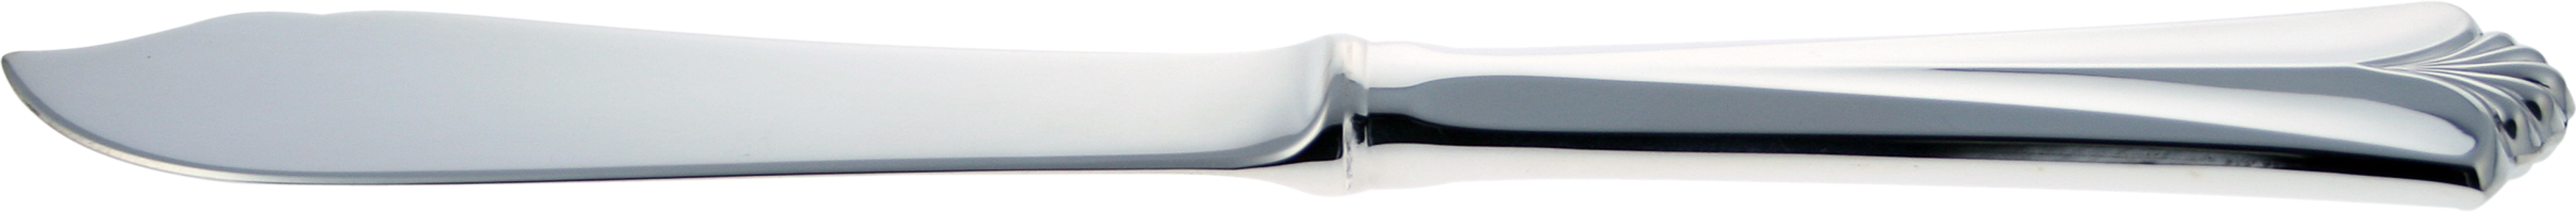 Fiskekniv med sølvklinge, Rådhus vifte sølvbestikk